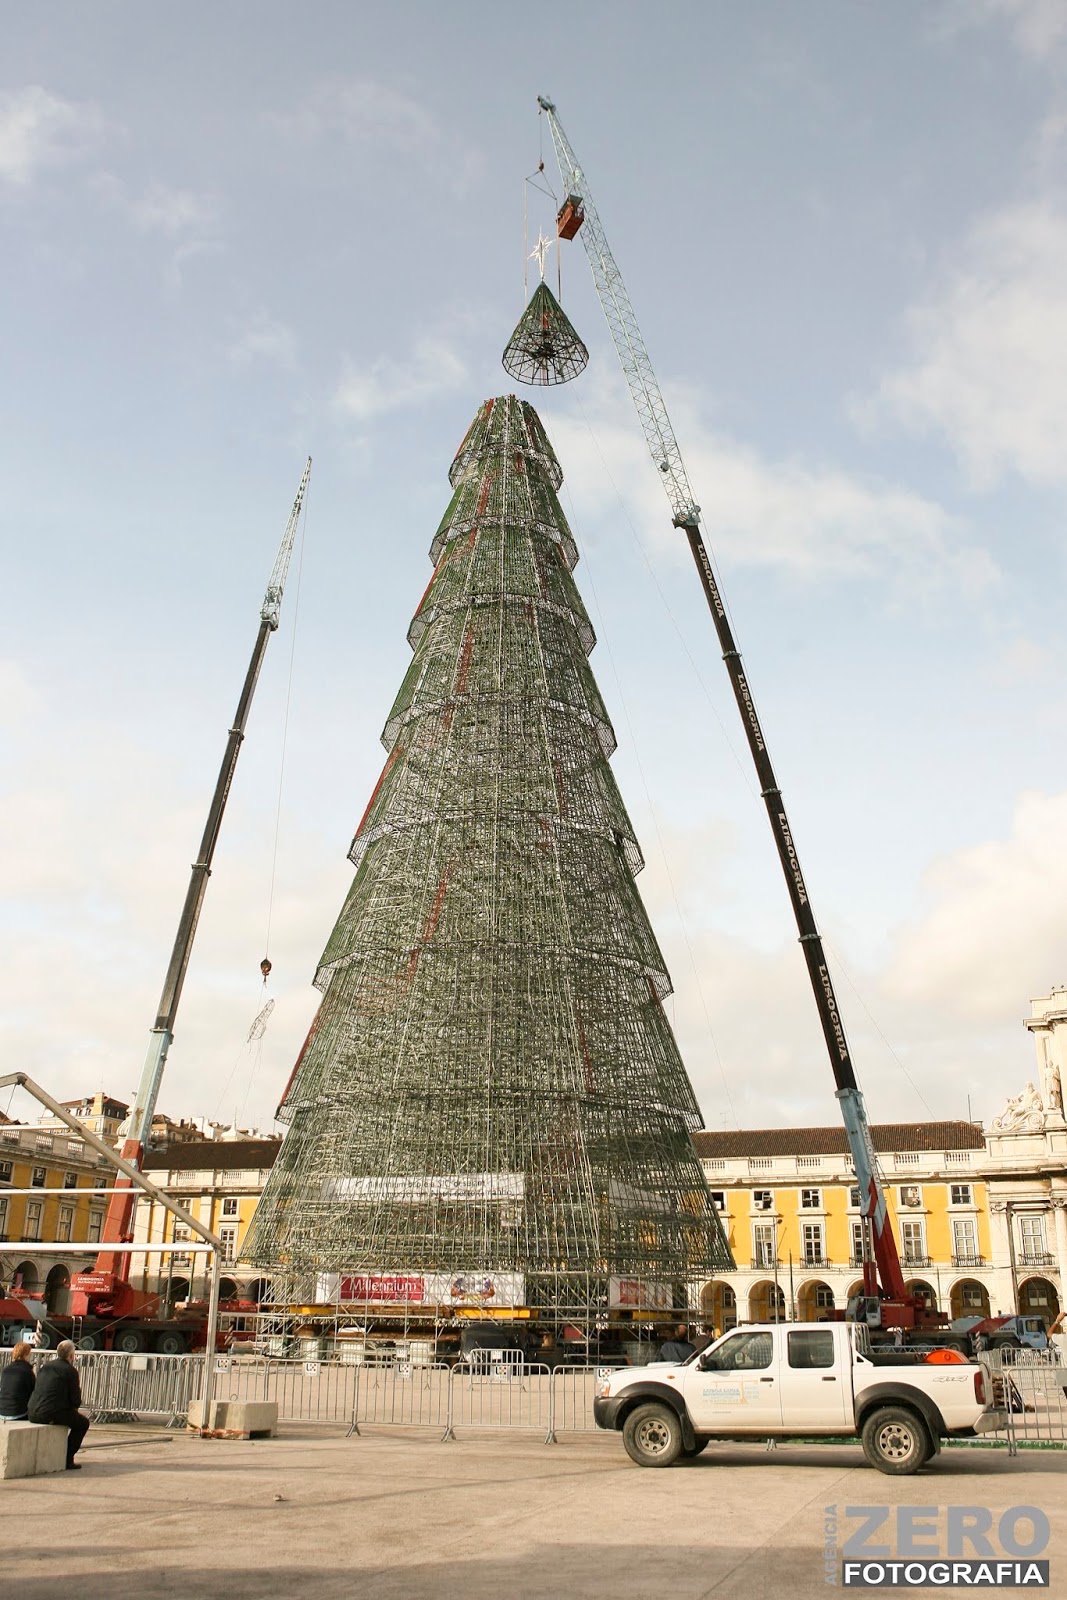 Fotografámos a montagem da maior árvore de natal do mundo, em Lisboa! |  Agência Zero Fotografia